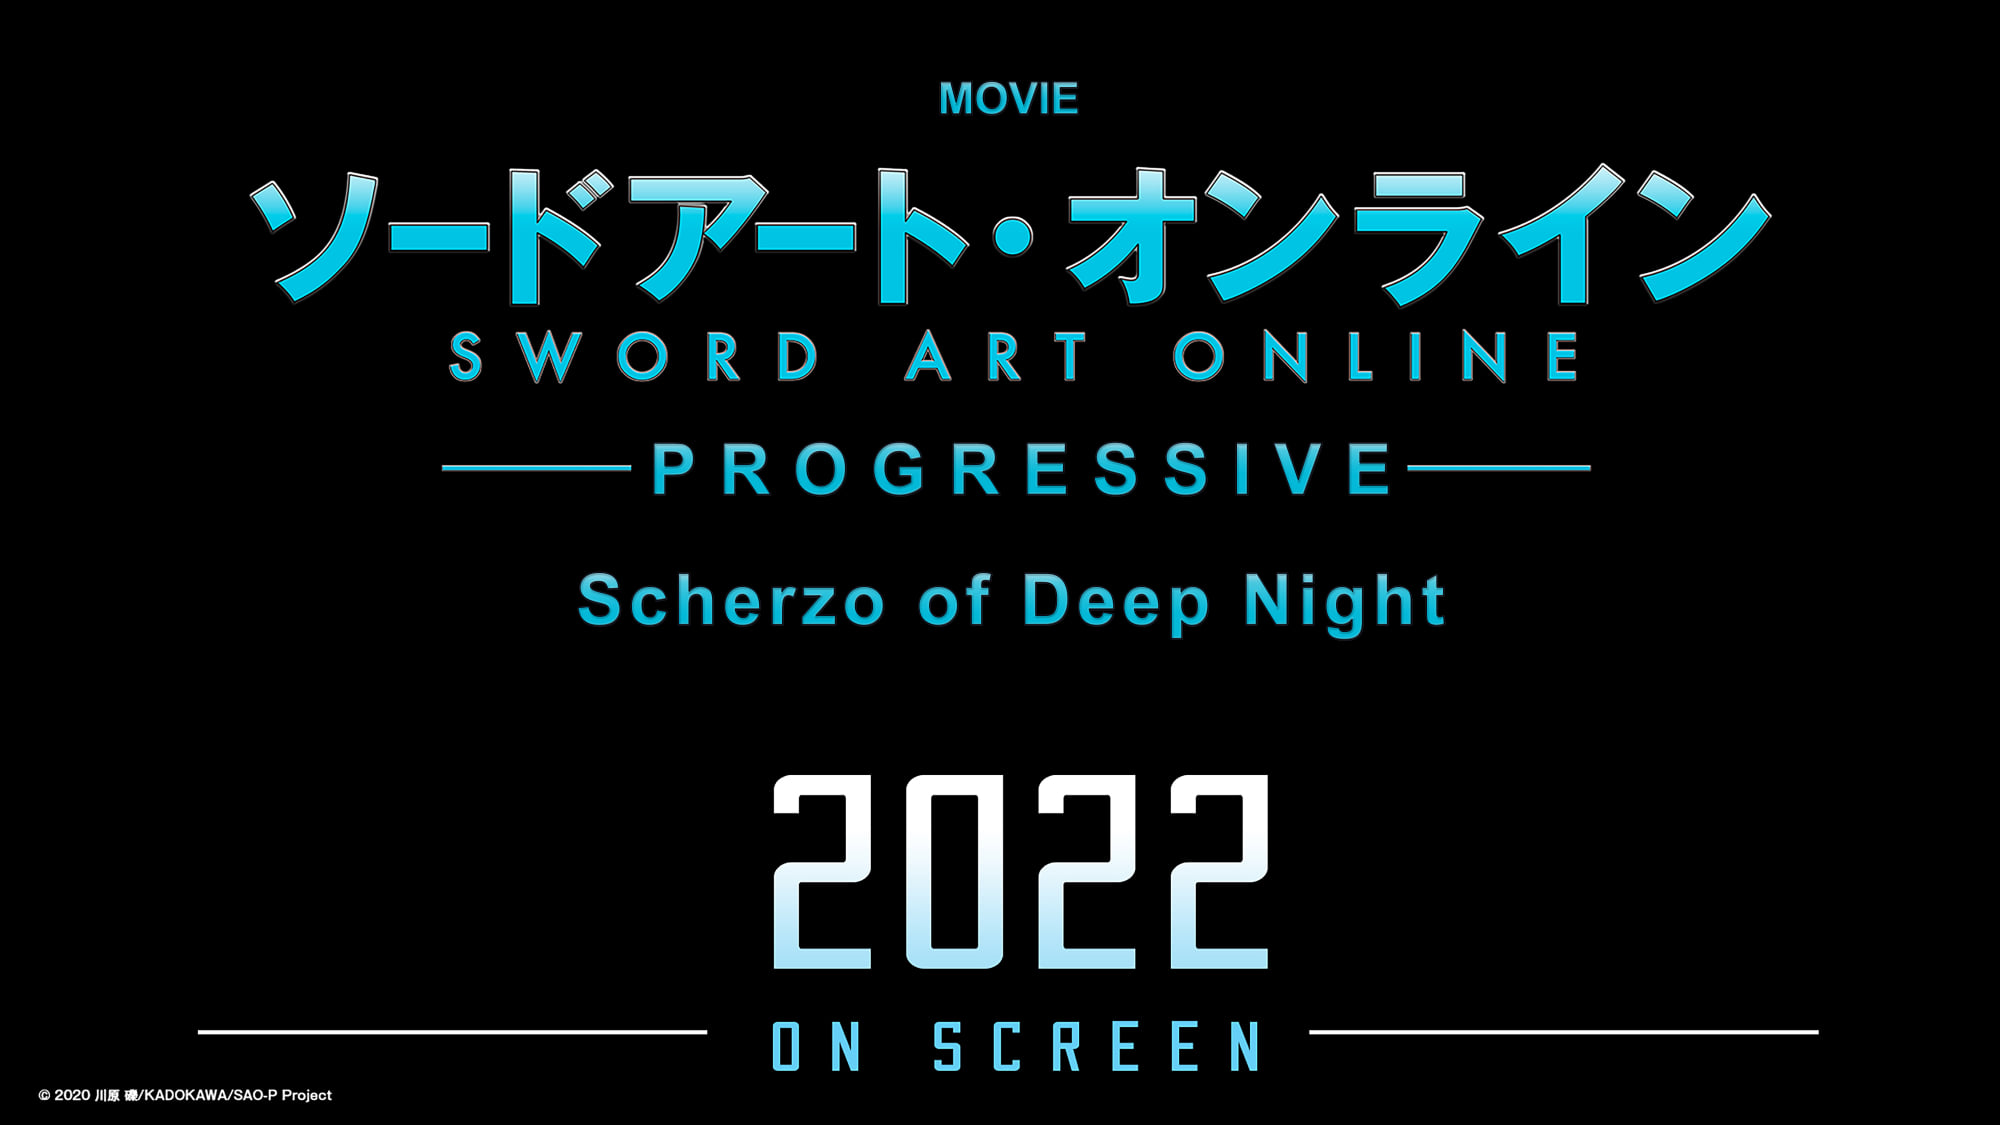 Progressive ra mắt chưa lâu, tác giả bộ truyện gửi lời xin lỗi khi Sword Art Online công bố anime movie tiếp theo